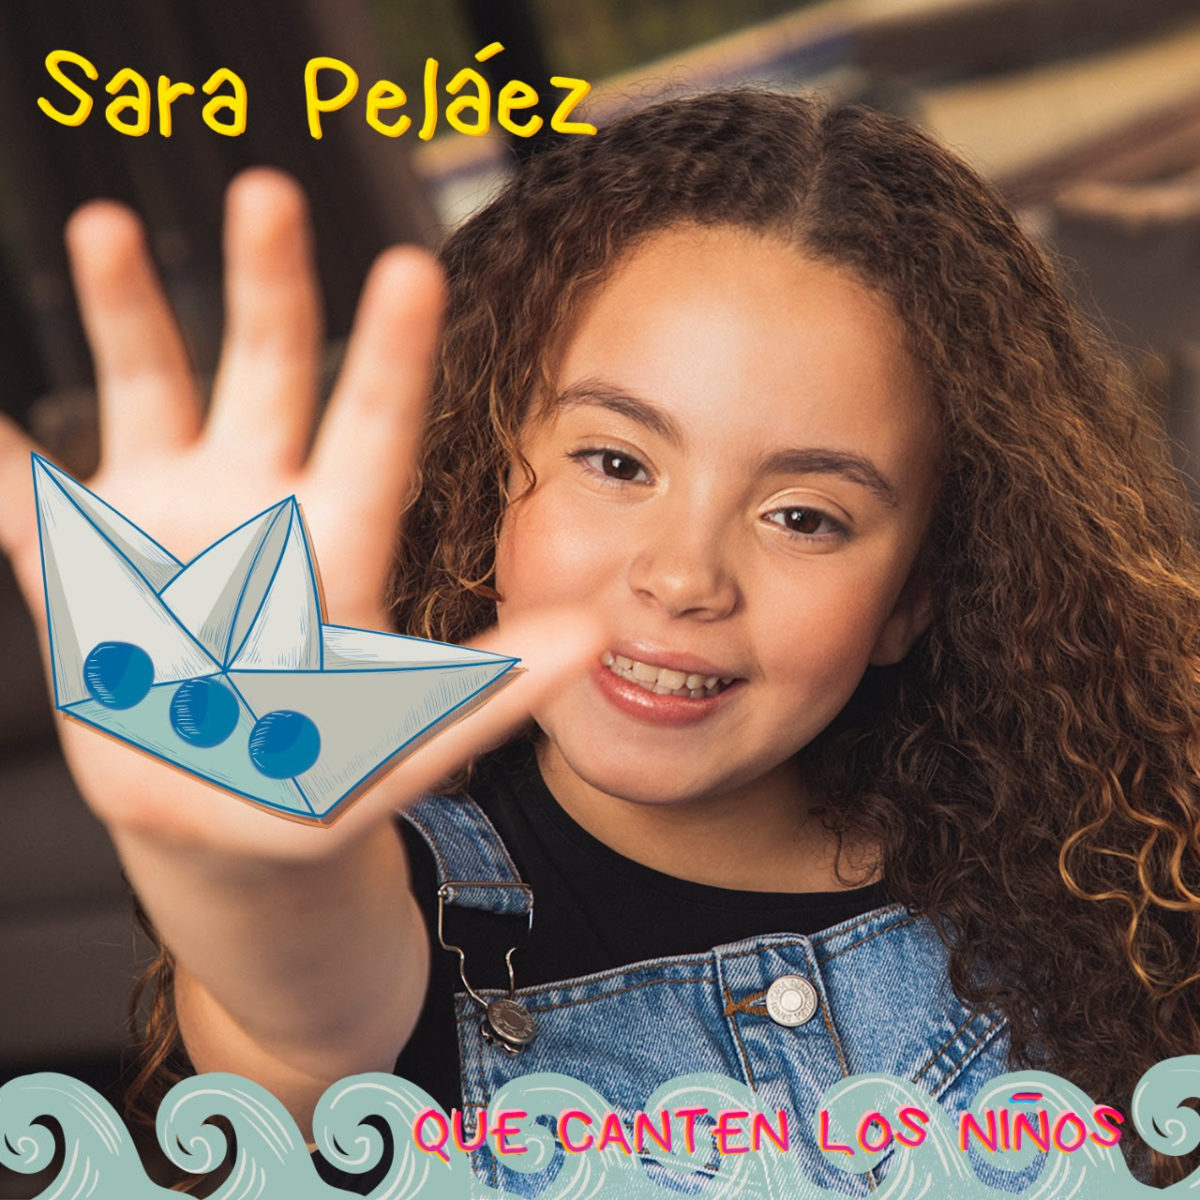 Sara Peláez (hija de Pipe Peláez) incursiona en la música, con nueva versión de ‘Que canten los niños’